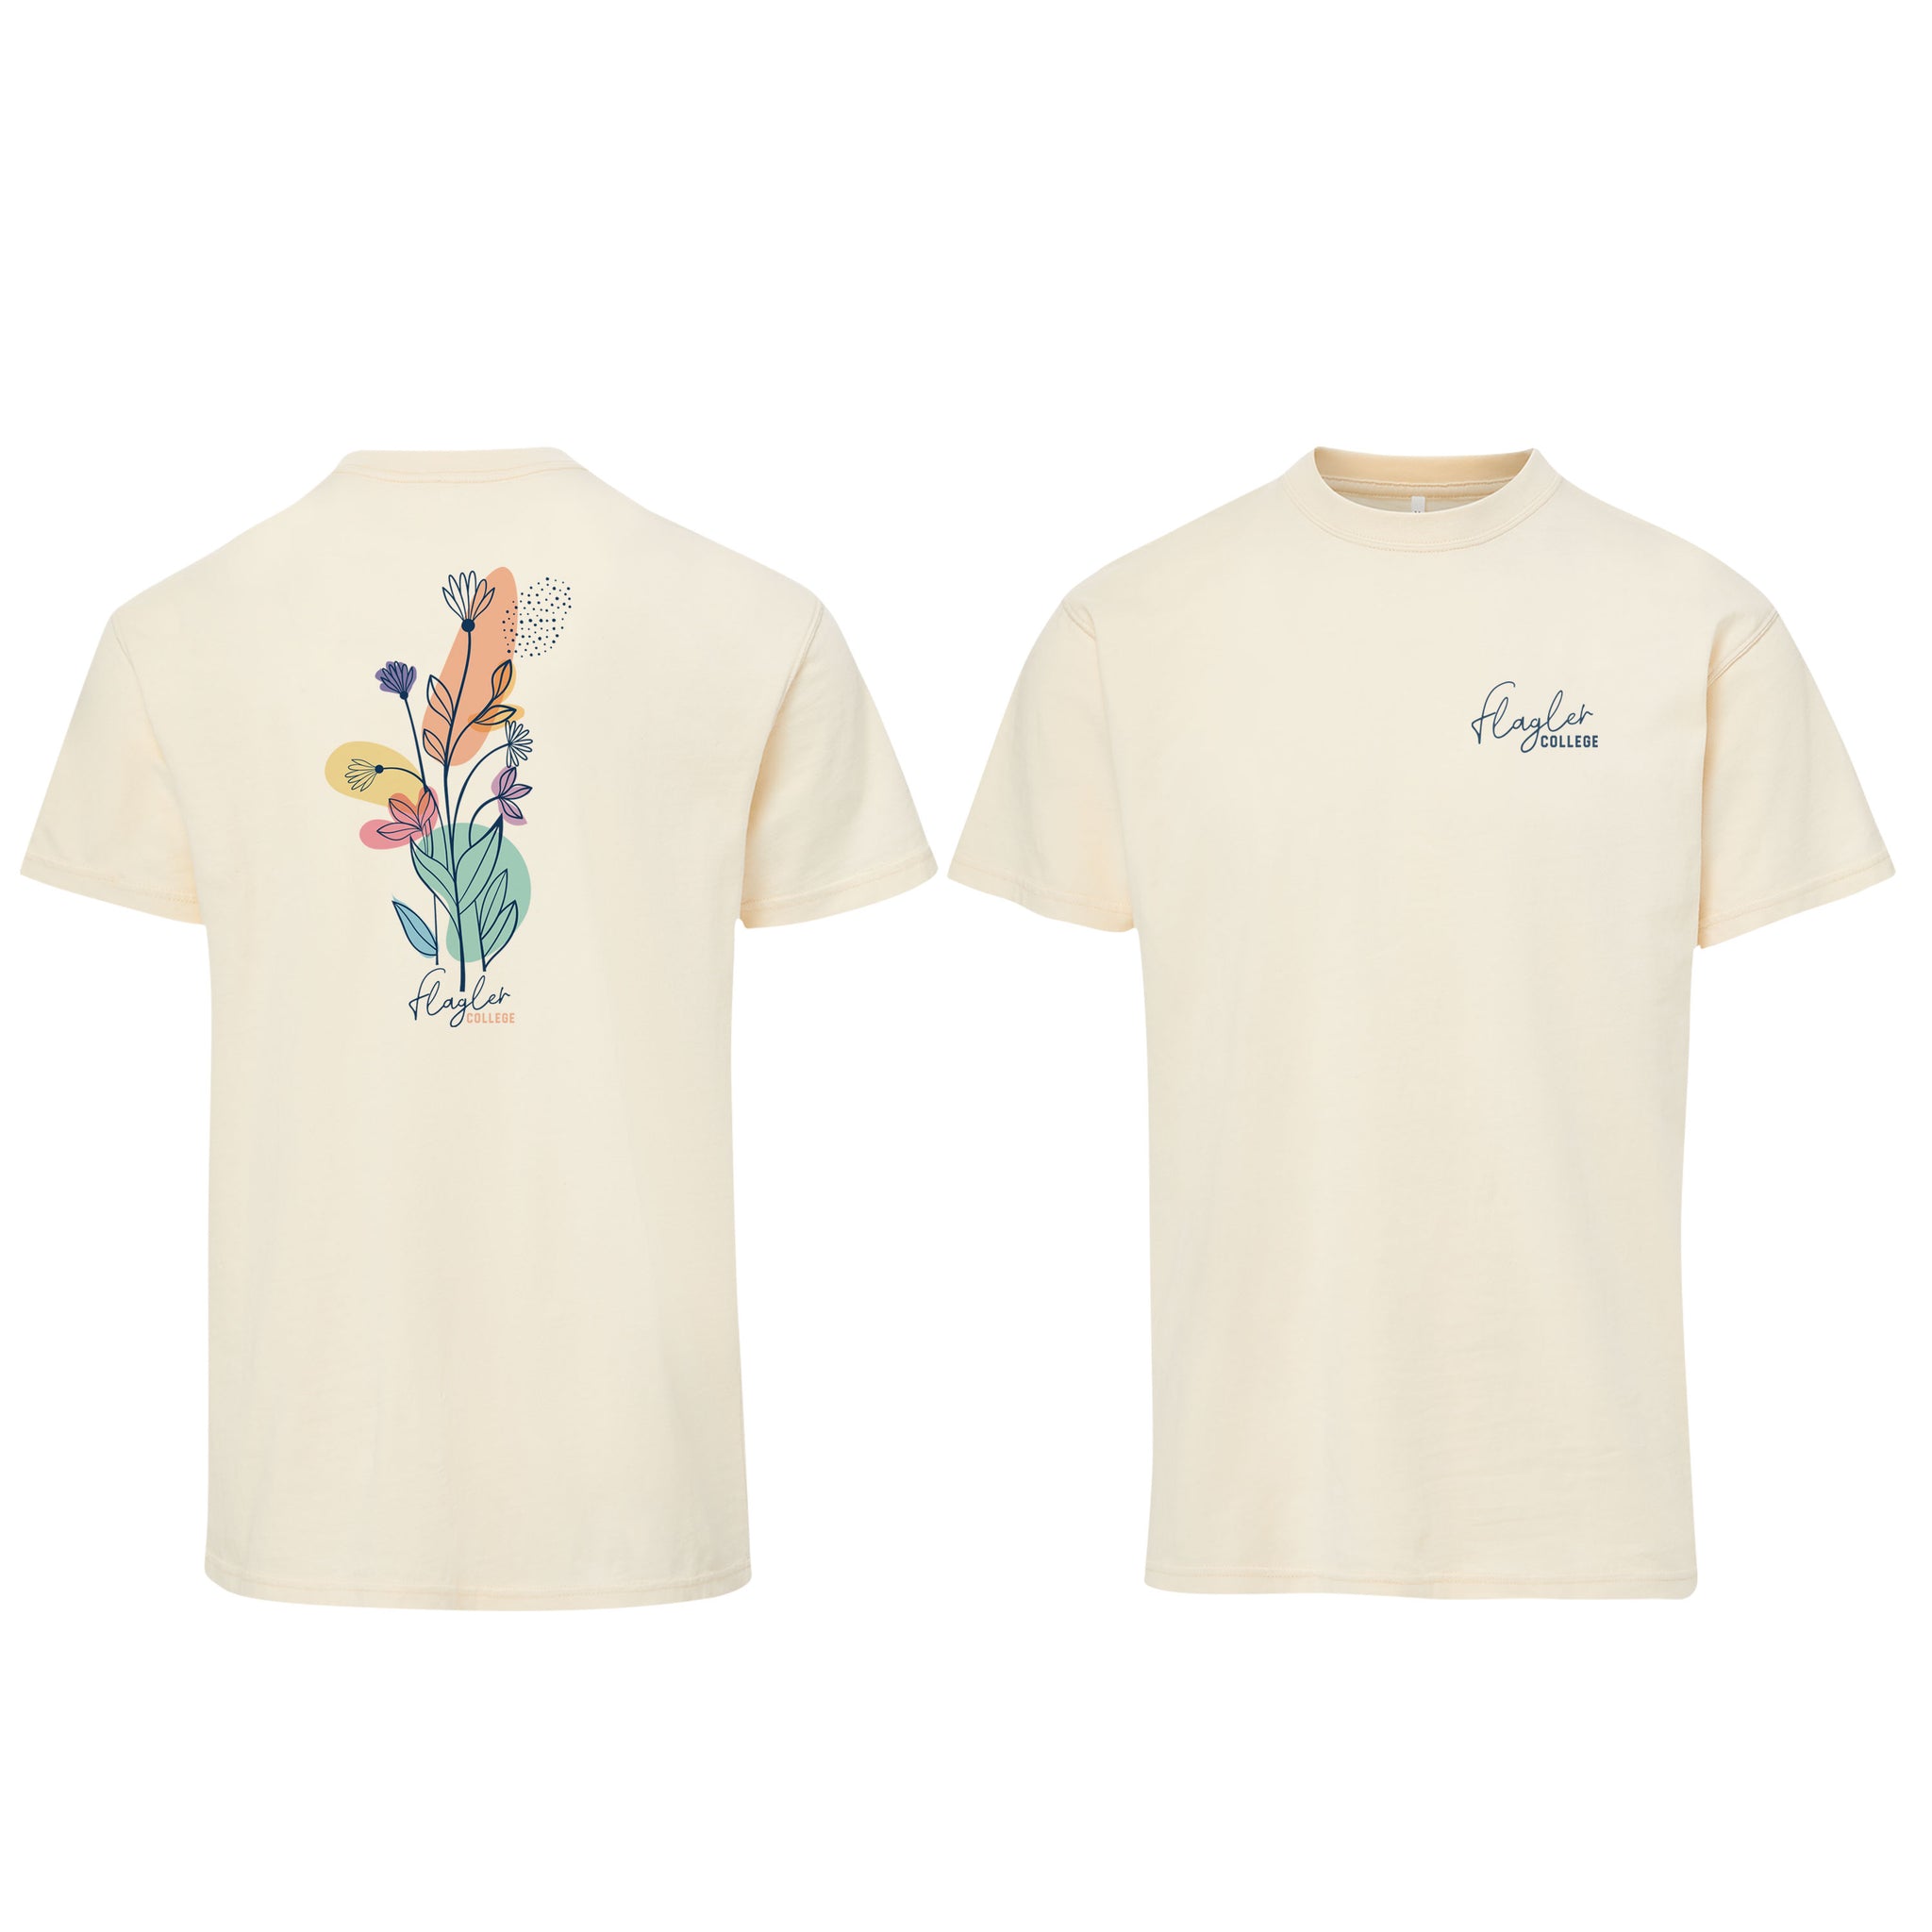 Floral Back Flagler College T-Shirt